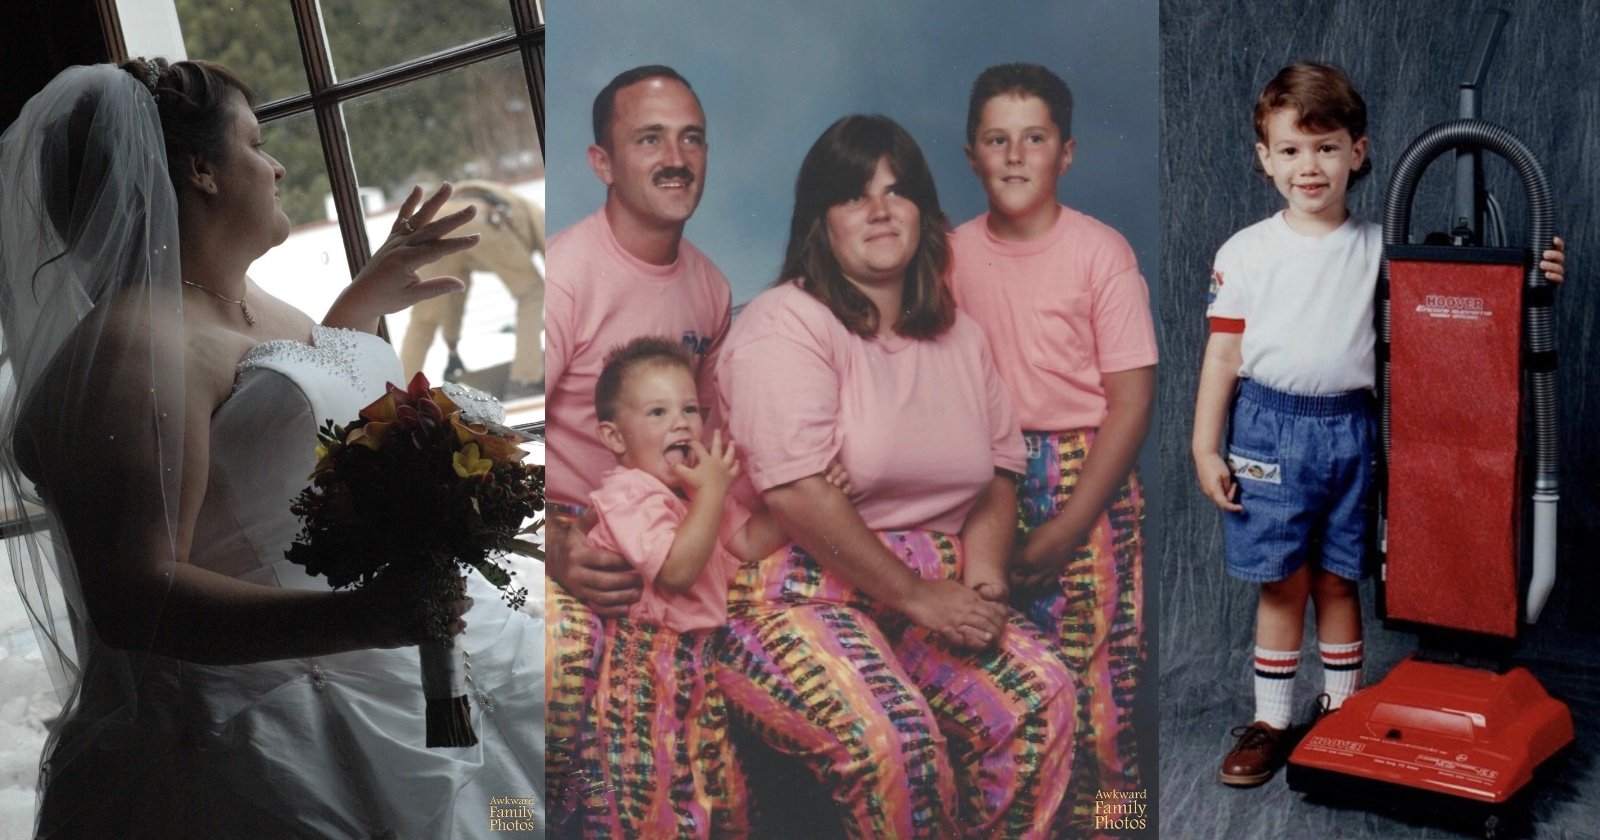 awkward family photos exhibit